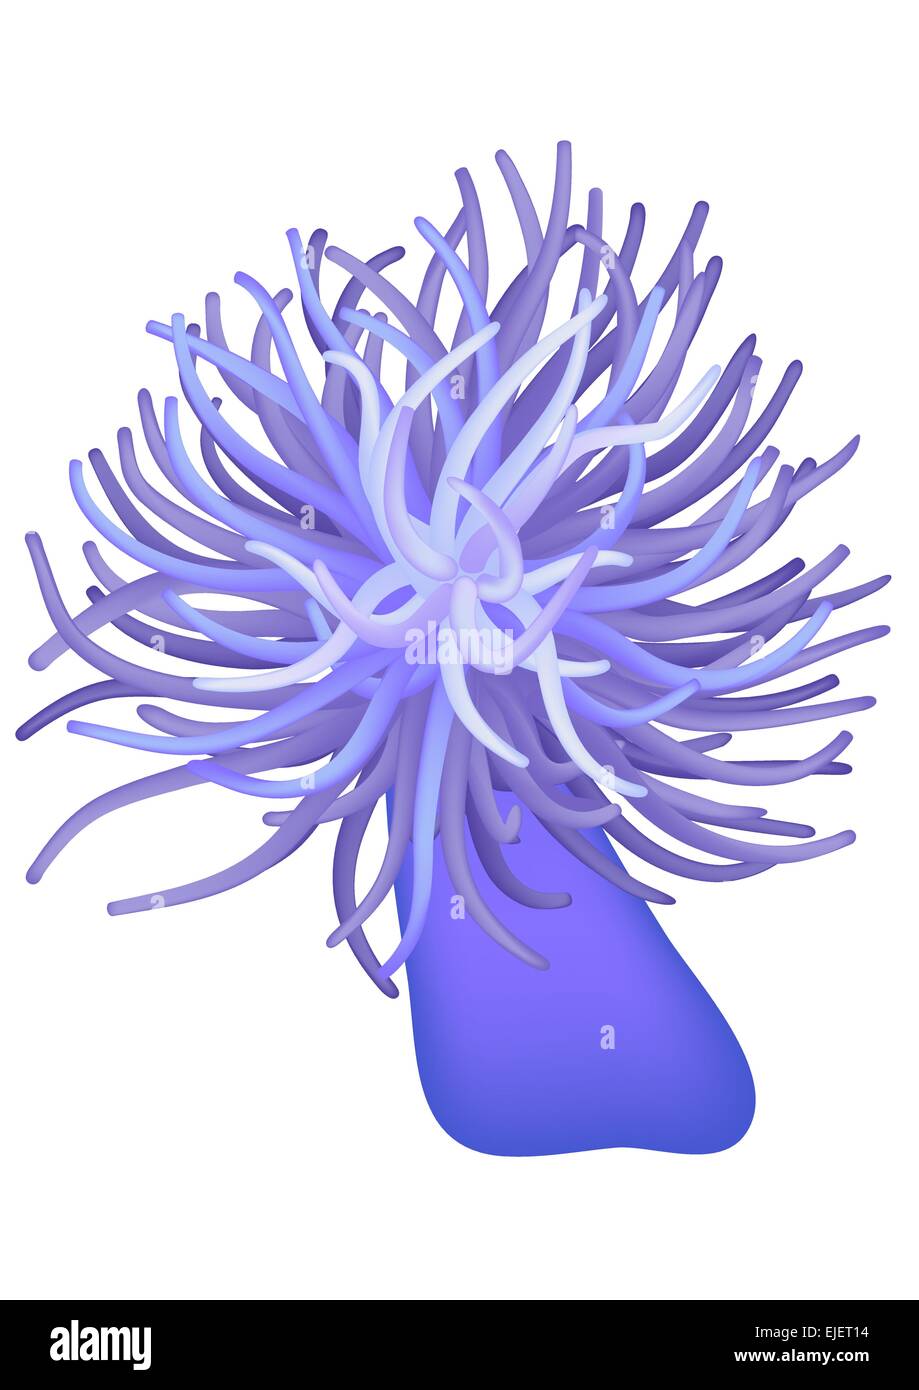 Illustrazione dell'anemone marittimo - seaflower - vettore Illustrazione Vettoriale